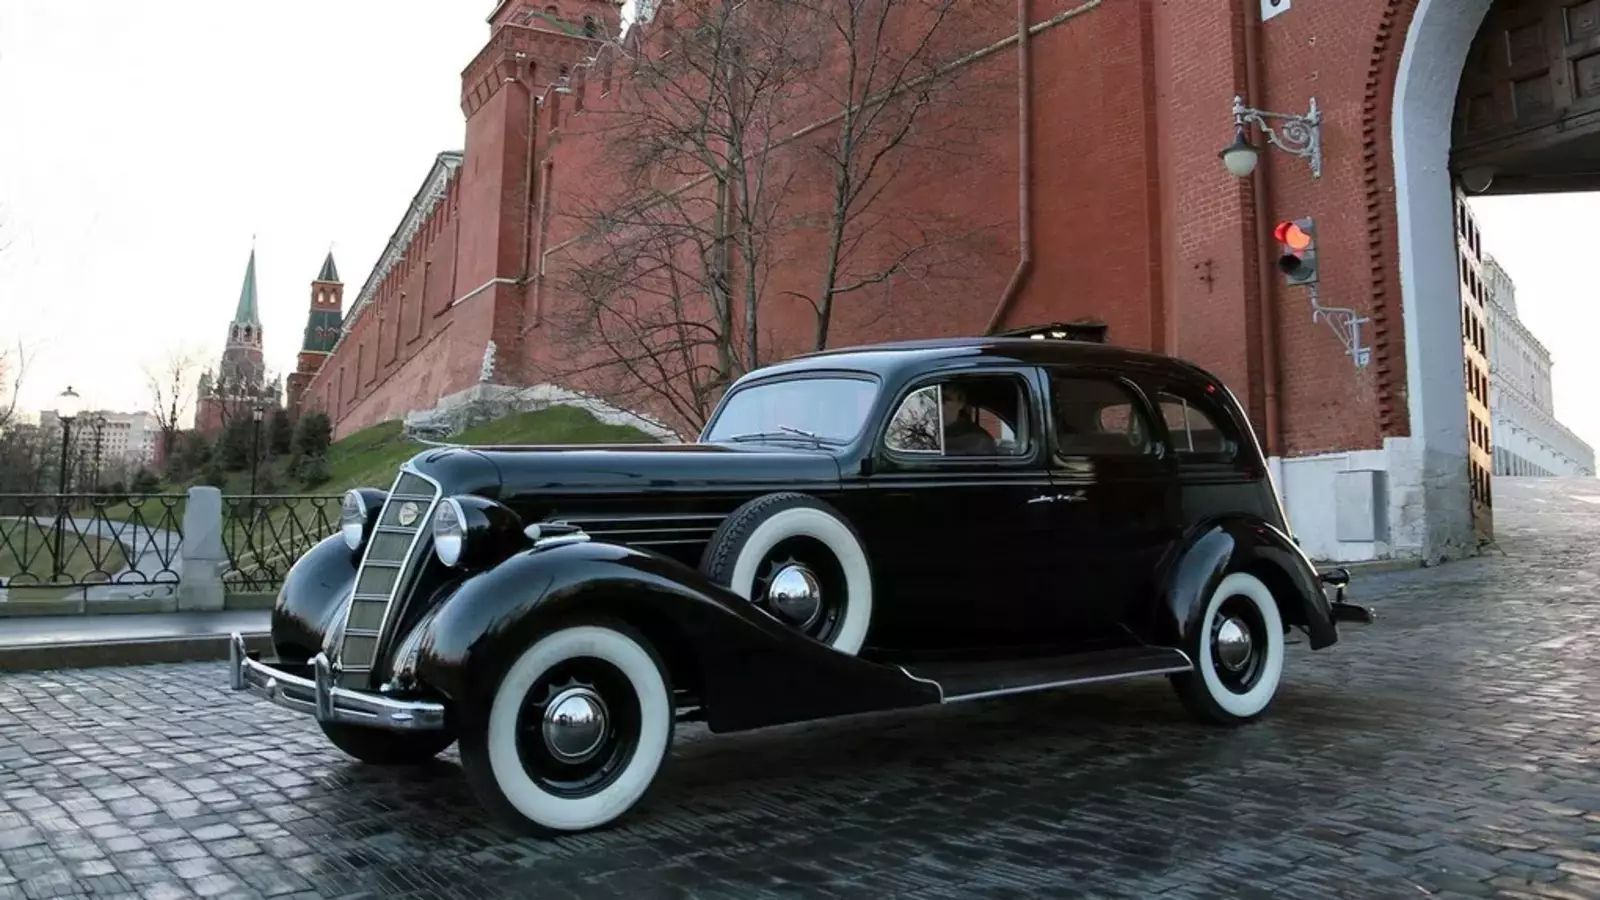 ЗИС-101 — советский семиместный представительский автомобиль с кузовом «лимузин», выпускавшийся на Заводе им. Сталина (Москва) в 1936—1941 годах.